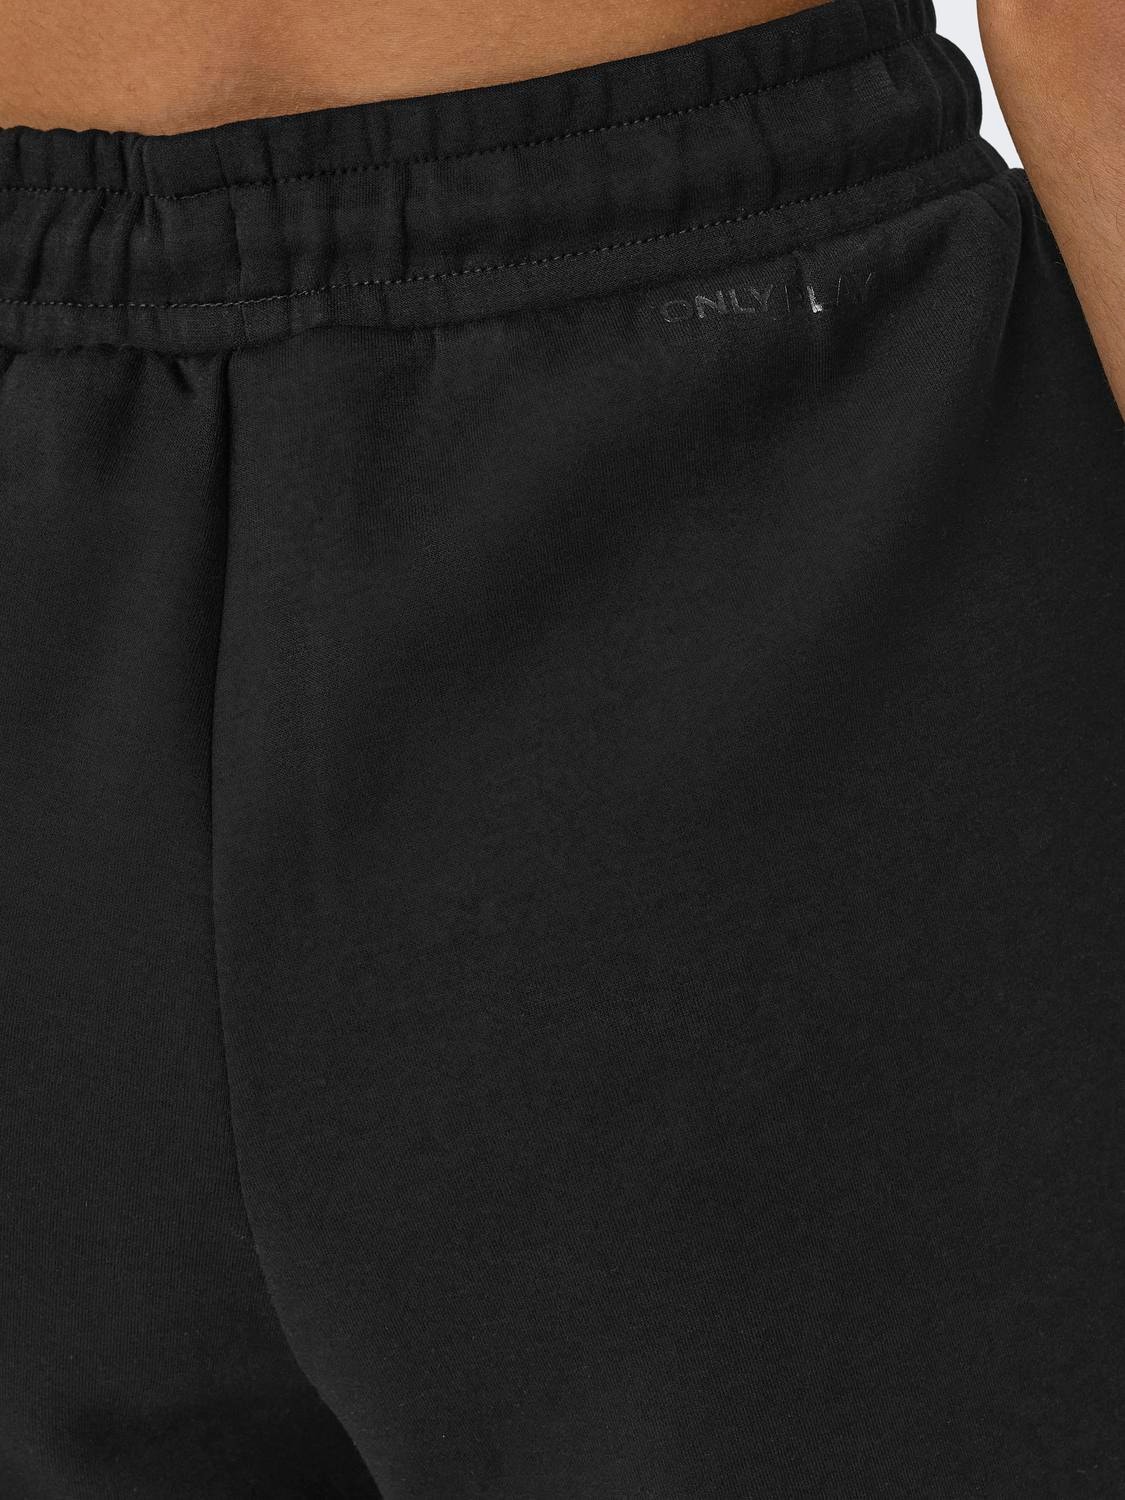 ONLY Unicolor Shorts de deporte -Black - 15245851